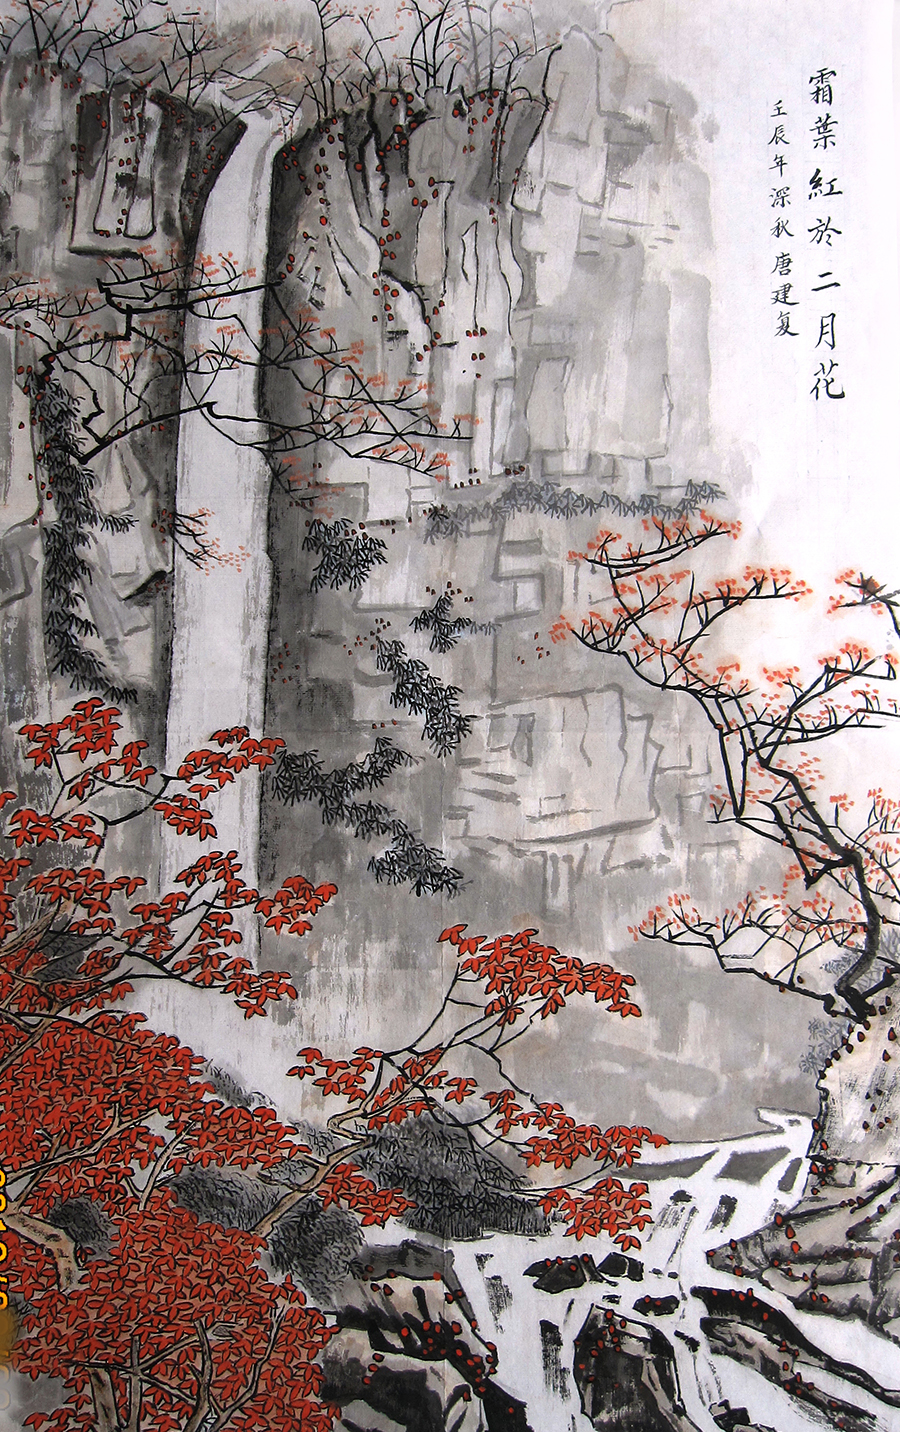 白雪石山水画作品 霜叶红于二月花  高清大图下载